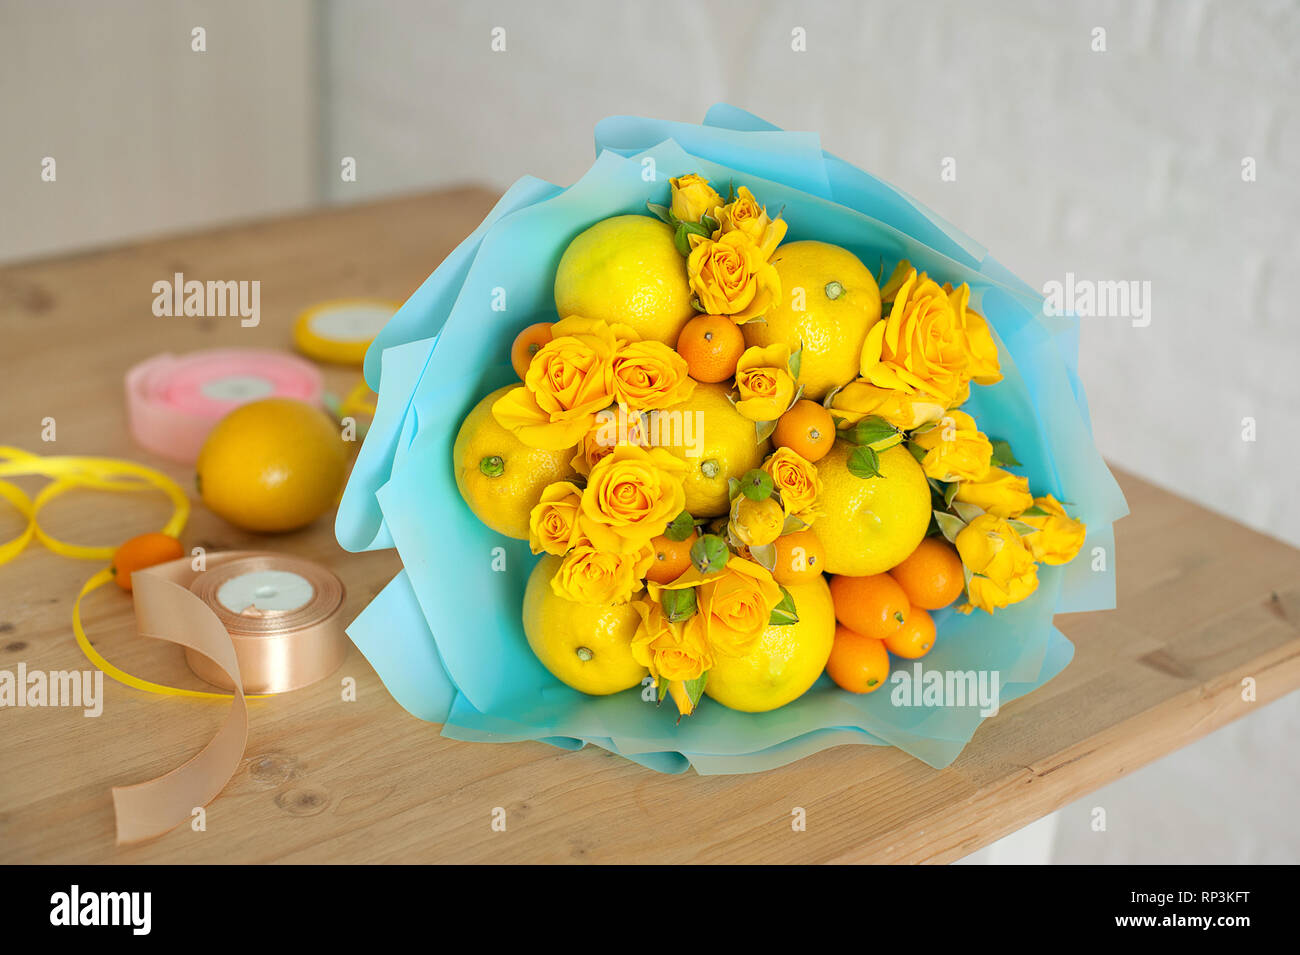 Bouquet de flores y frutas. composición sobre un fondo de madera Foto de stock